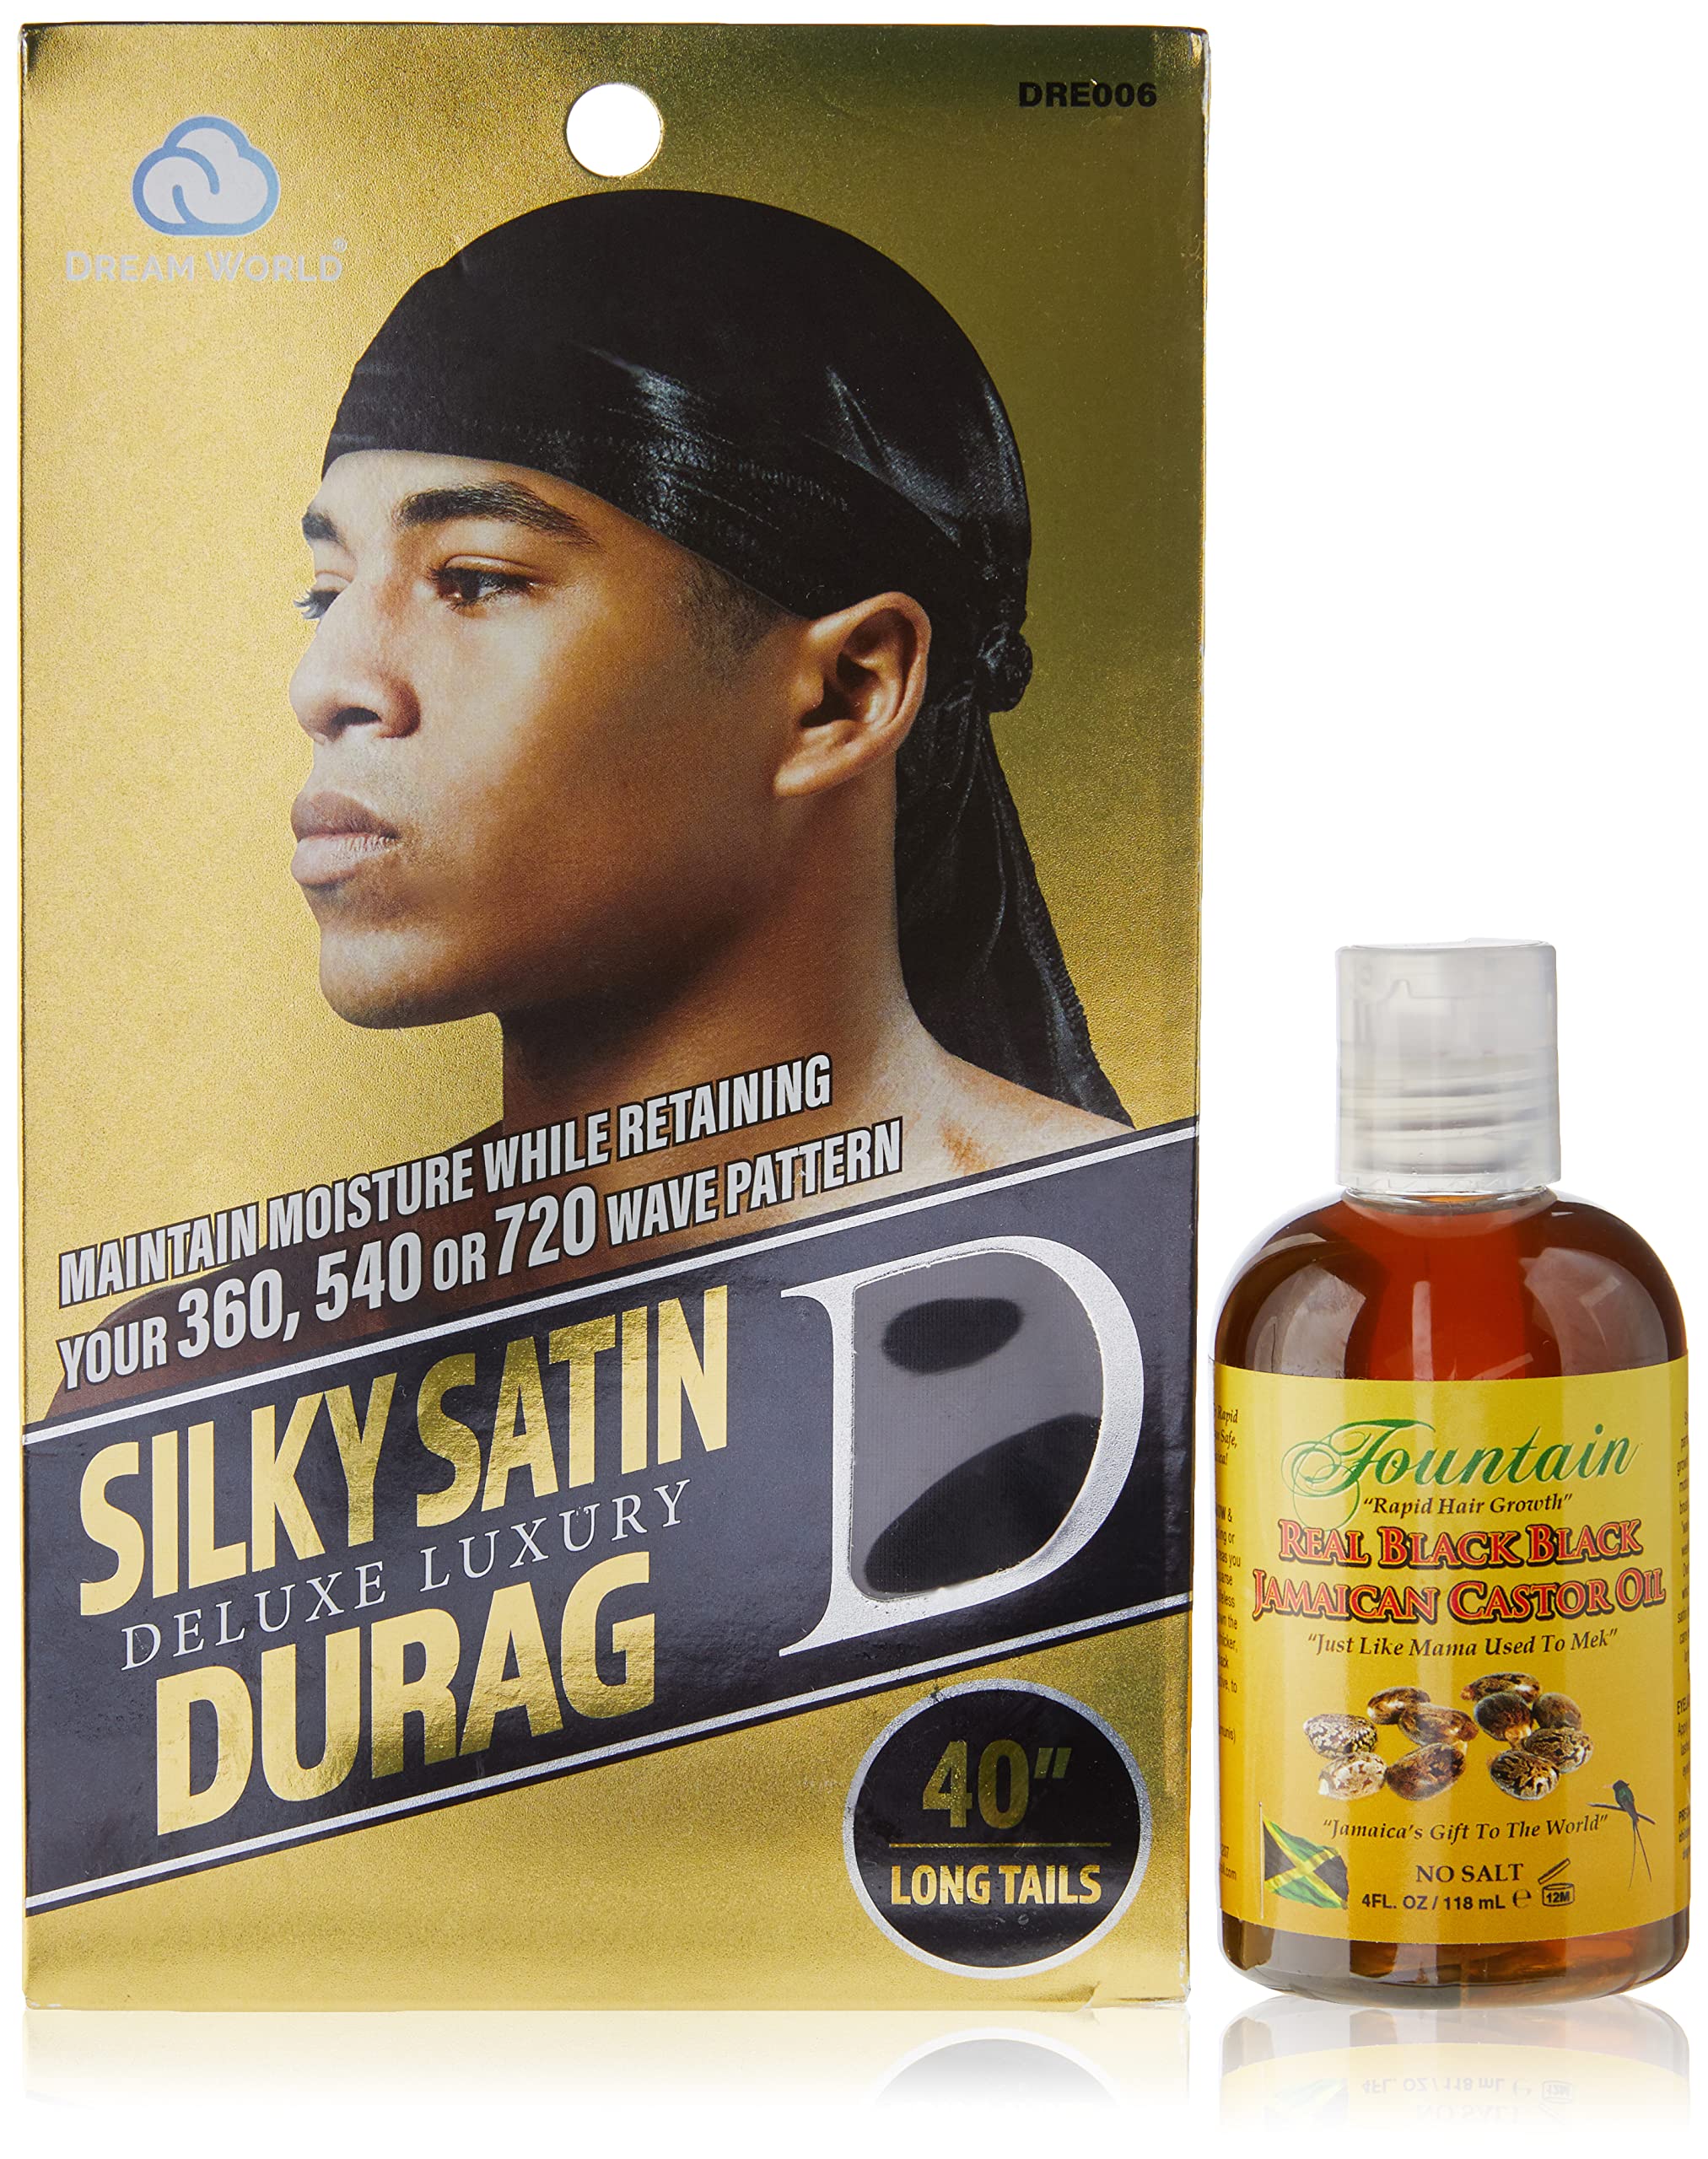 Fountain Real Black Black Jamaican Castor Oil - Beard Growth Oil - Mustache Growth - Beard Thickener - Hair Oil For Men - Luxury Satin Durag - 4 Oz